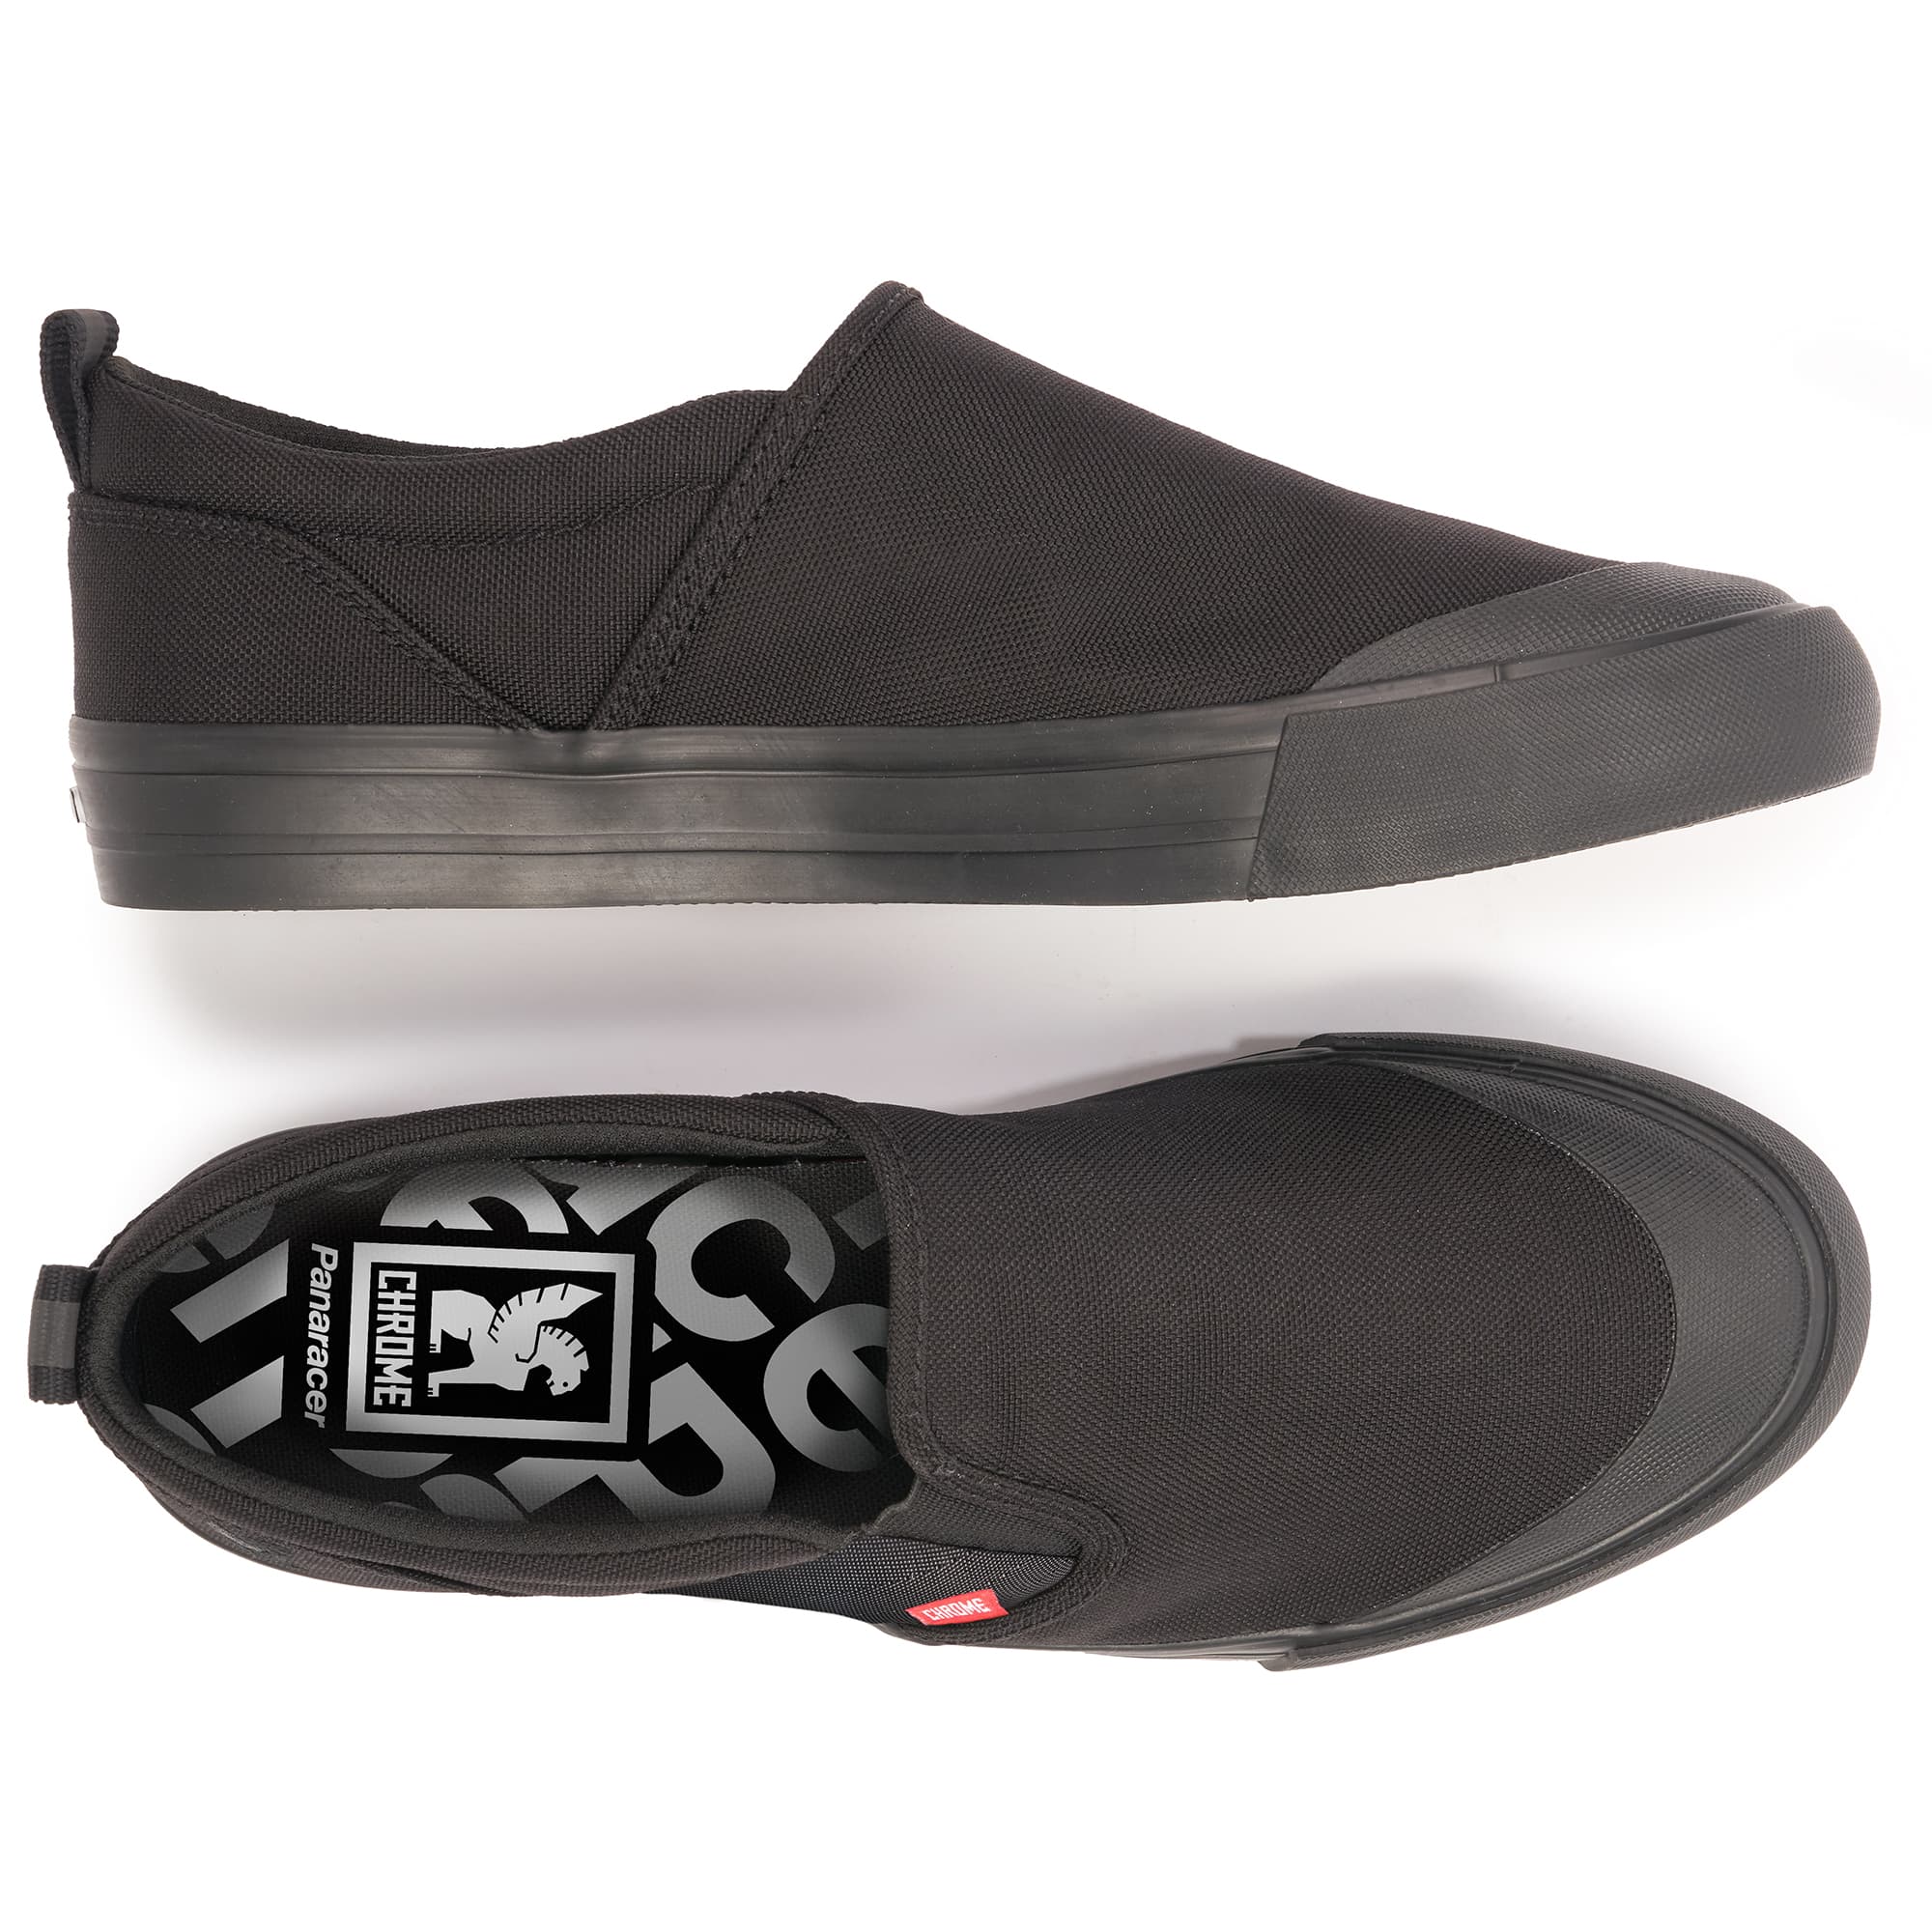 Dima 3.0 Slip-On Sneaker in black inside view #color_night